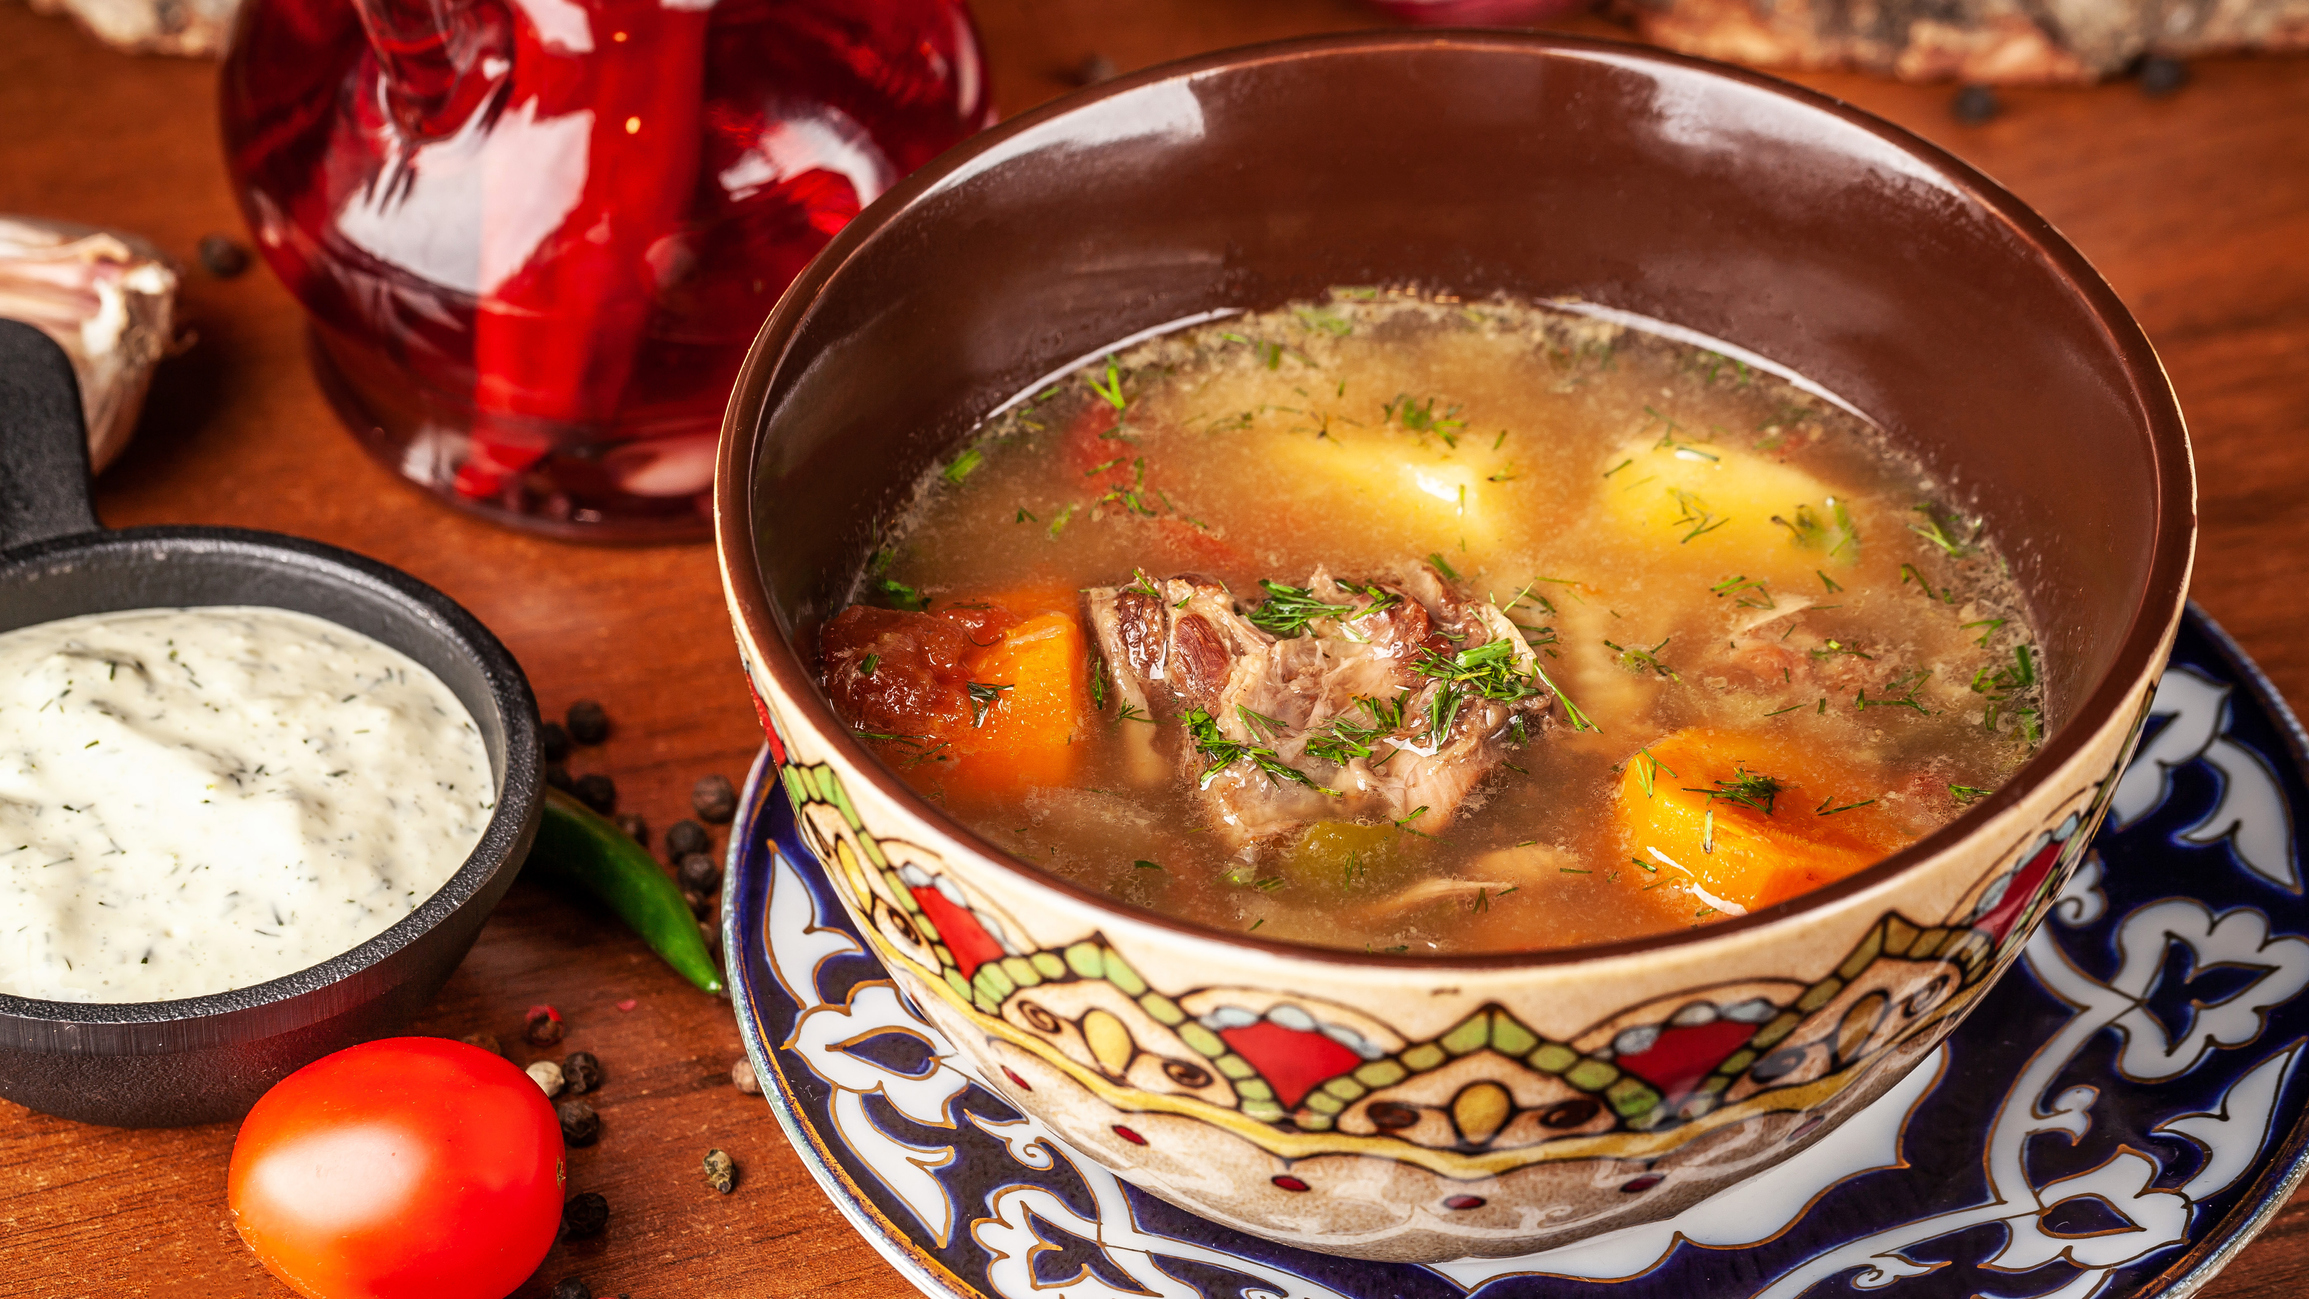 шурпа (узбекский луковый суп)